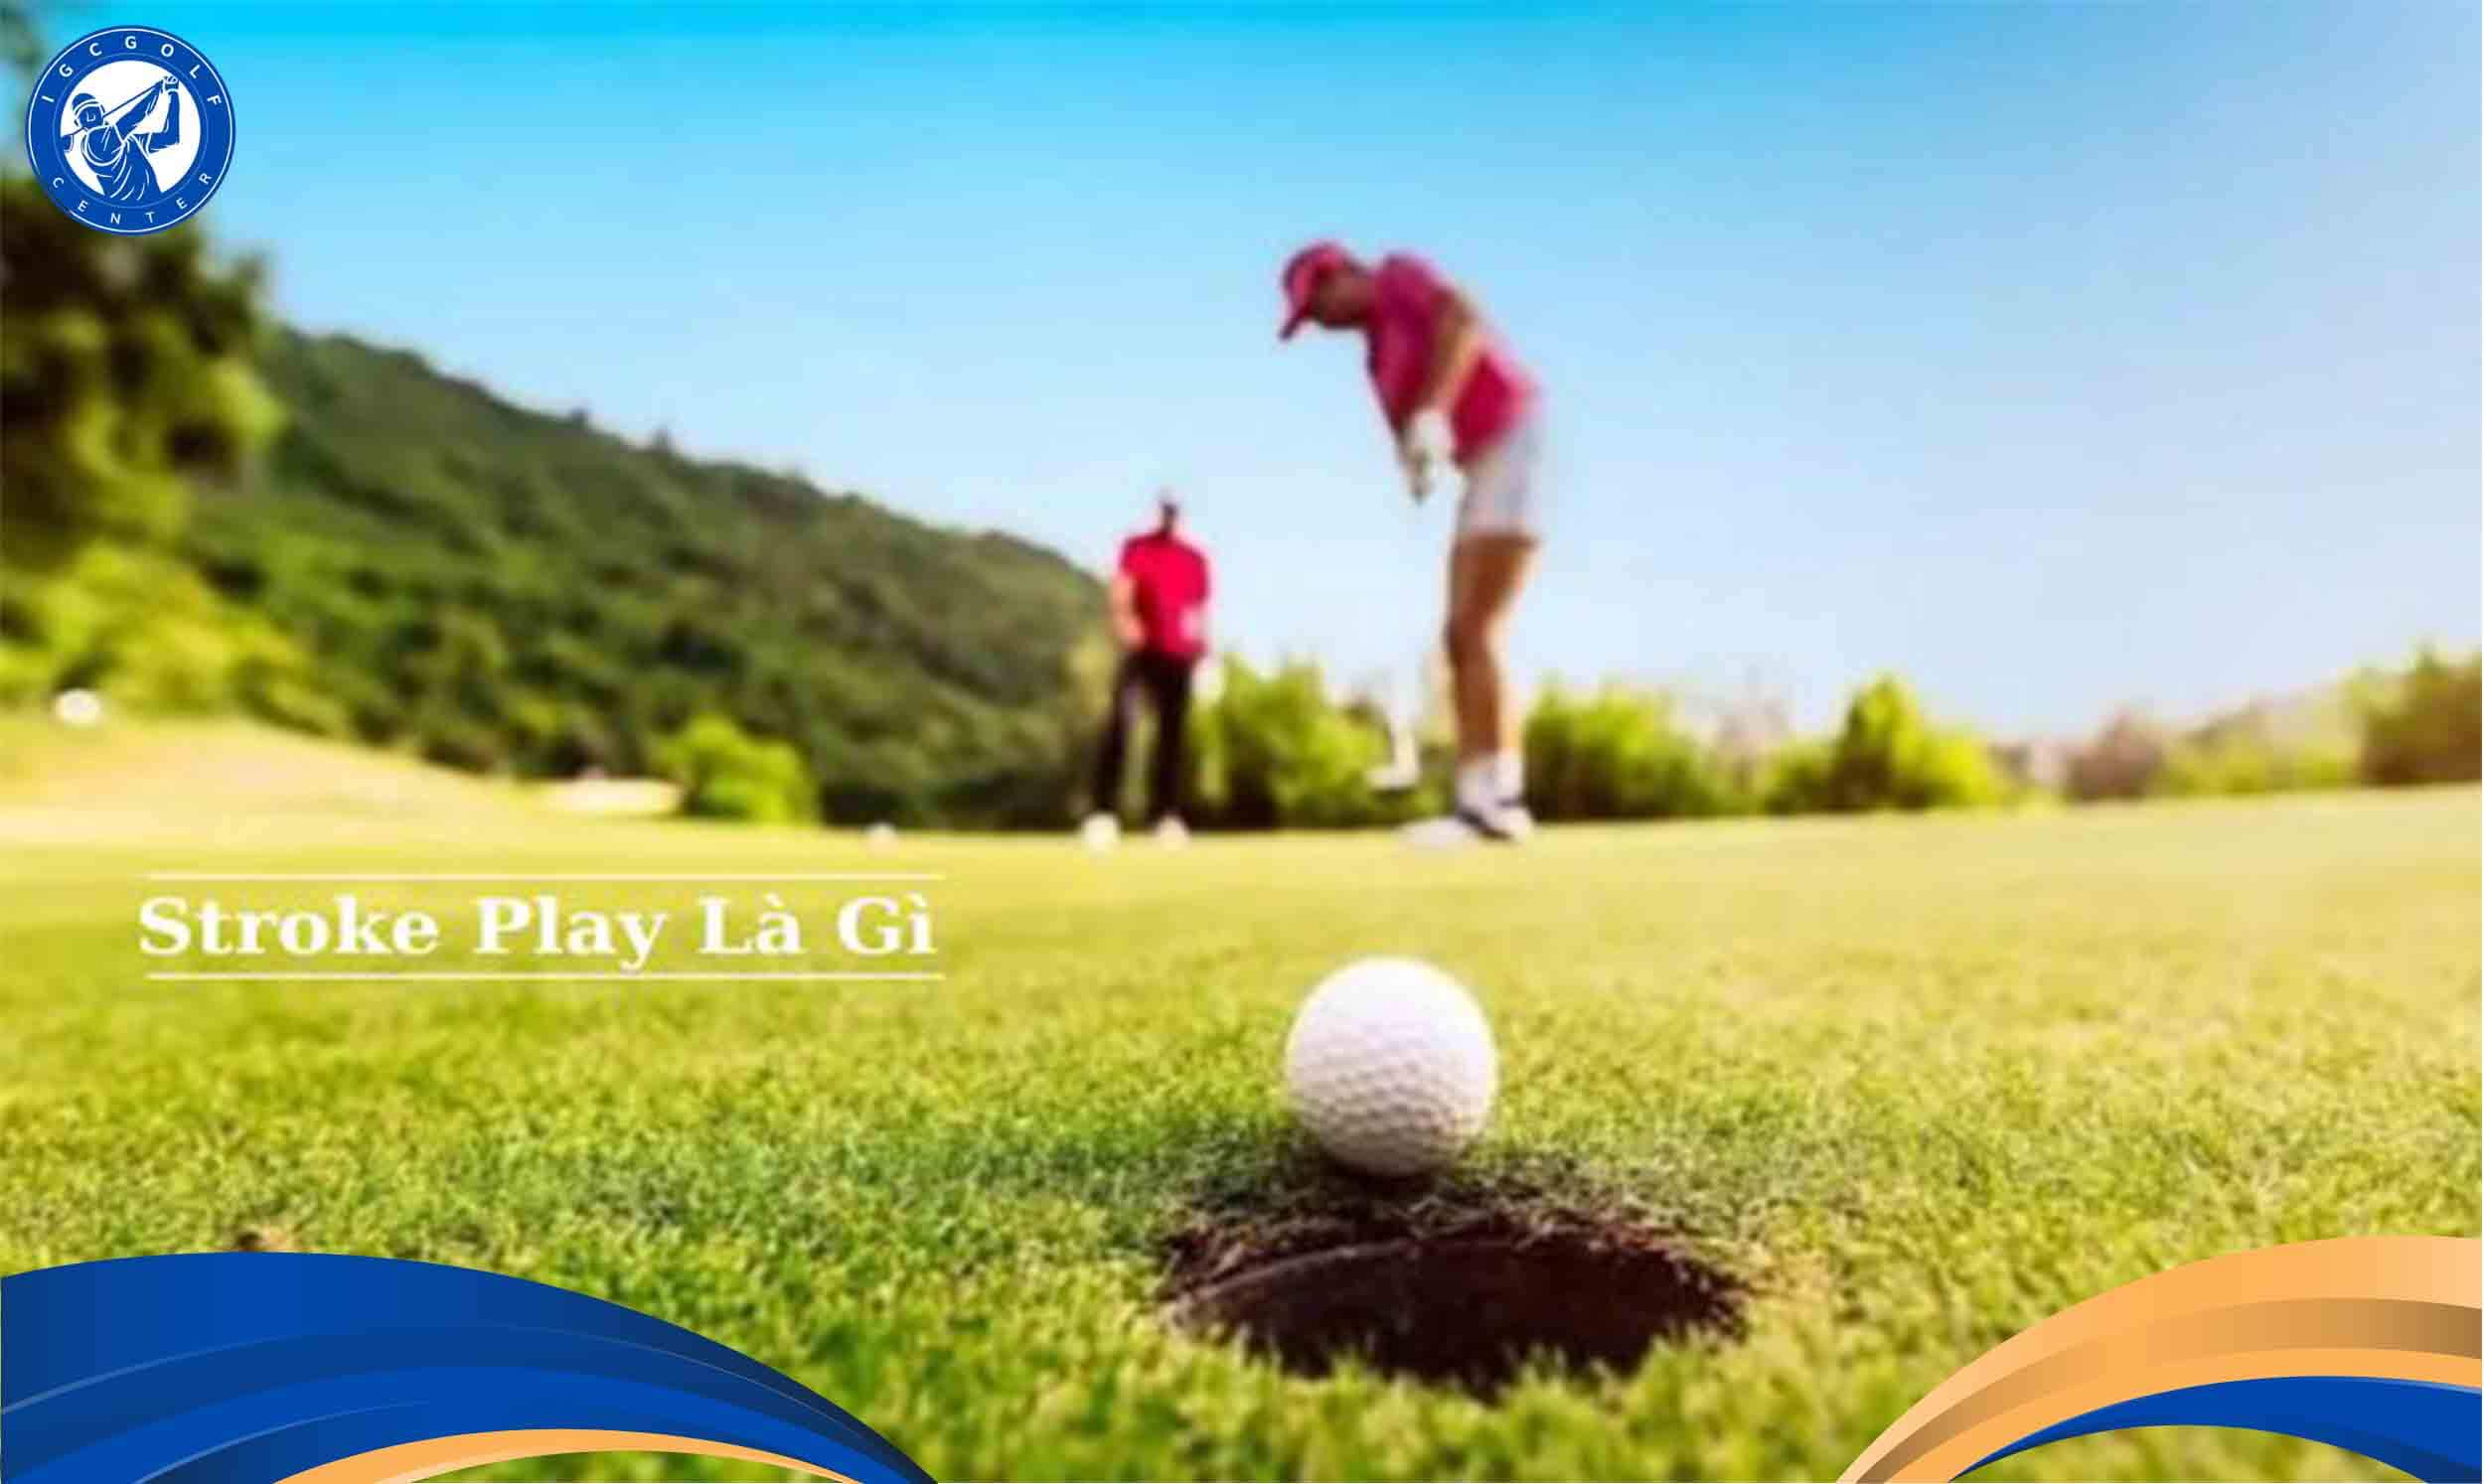 stroke play là gì trong golf